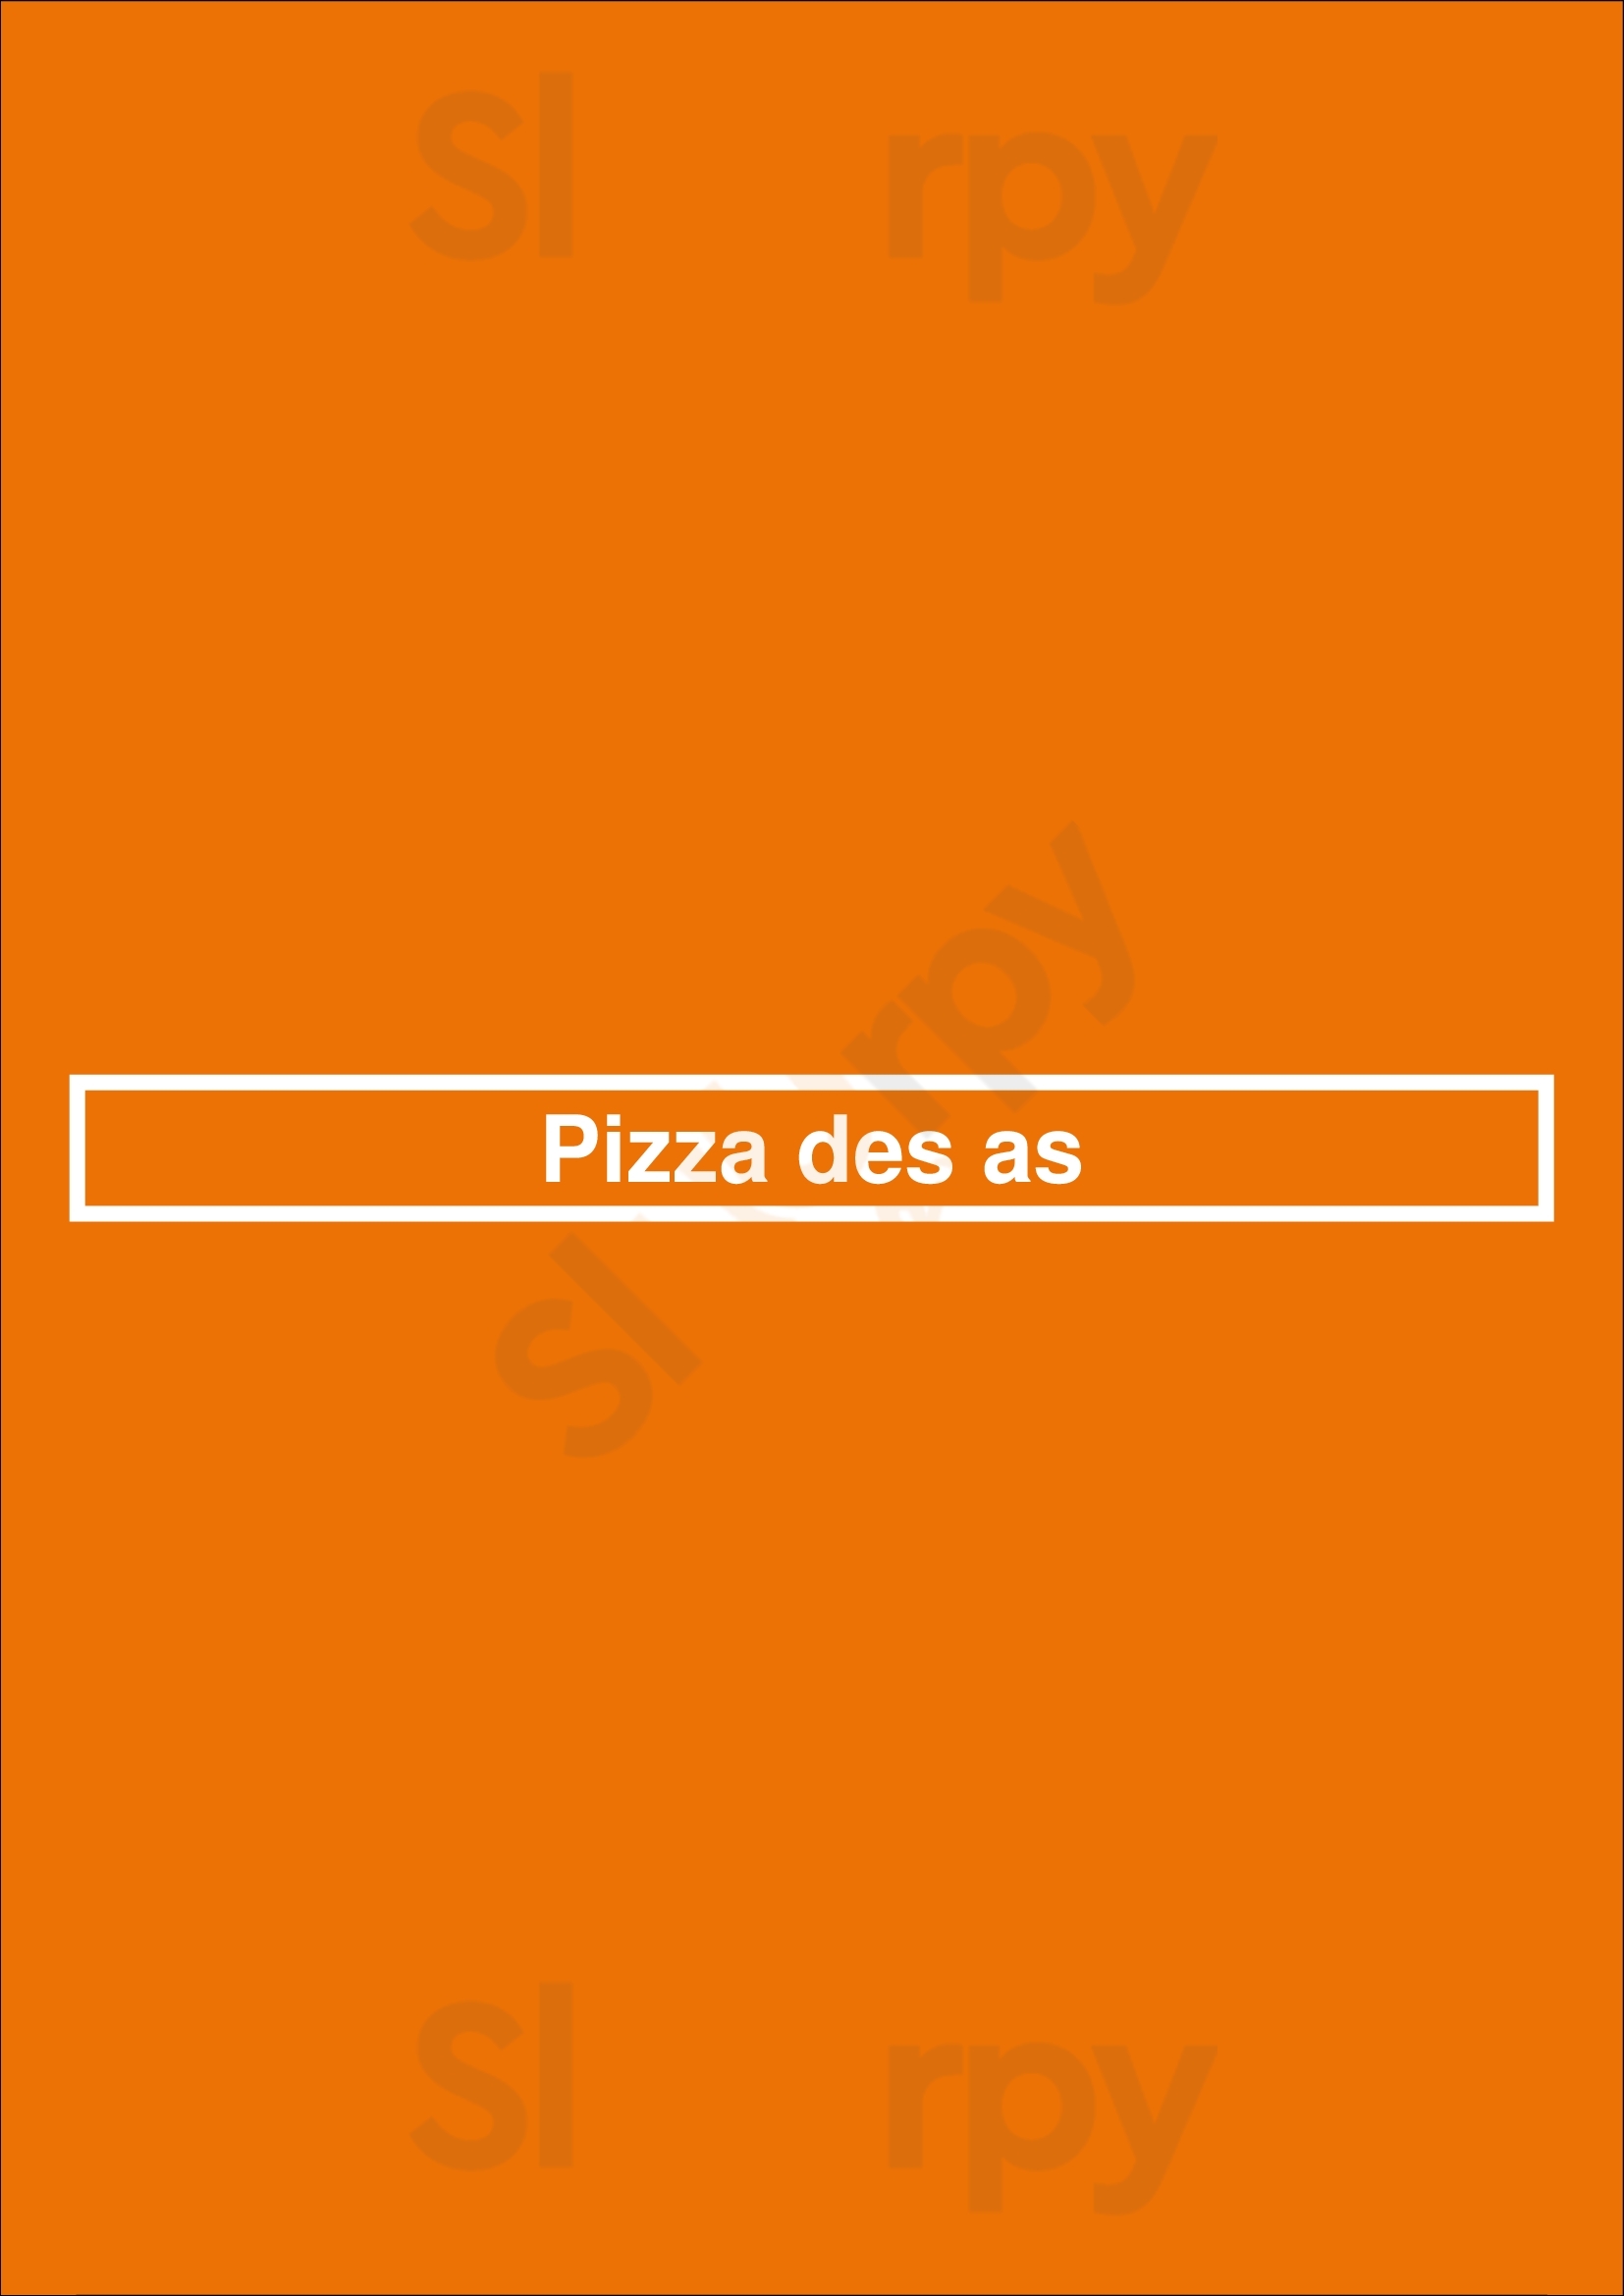 Pizza Des As Paris Menu - 1